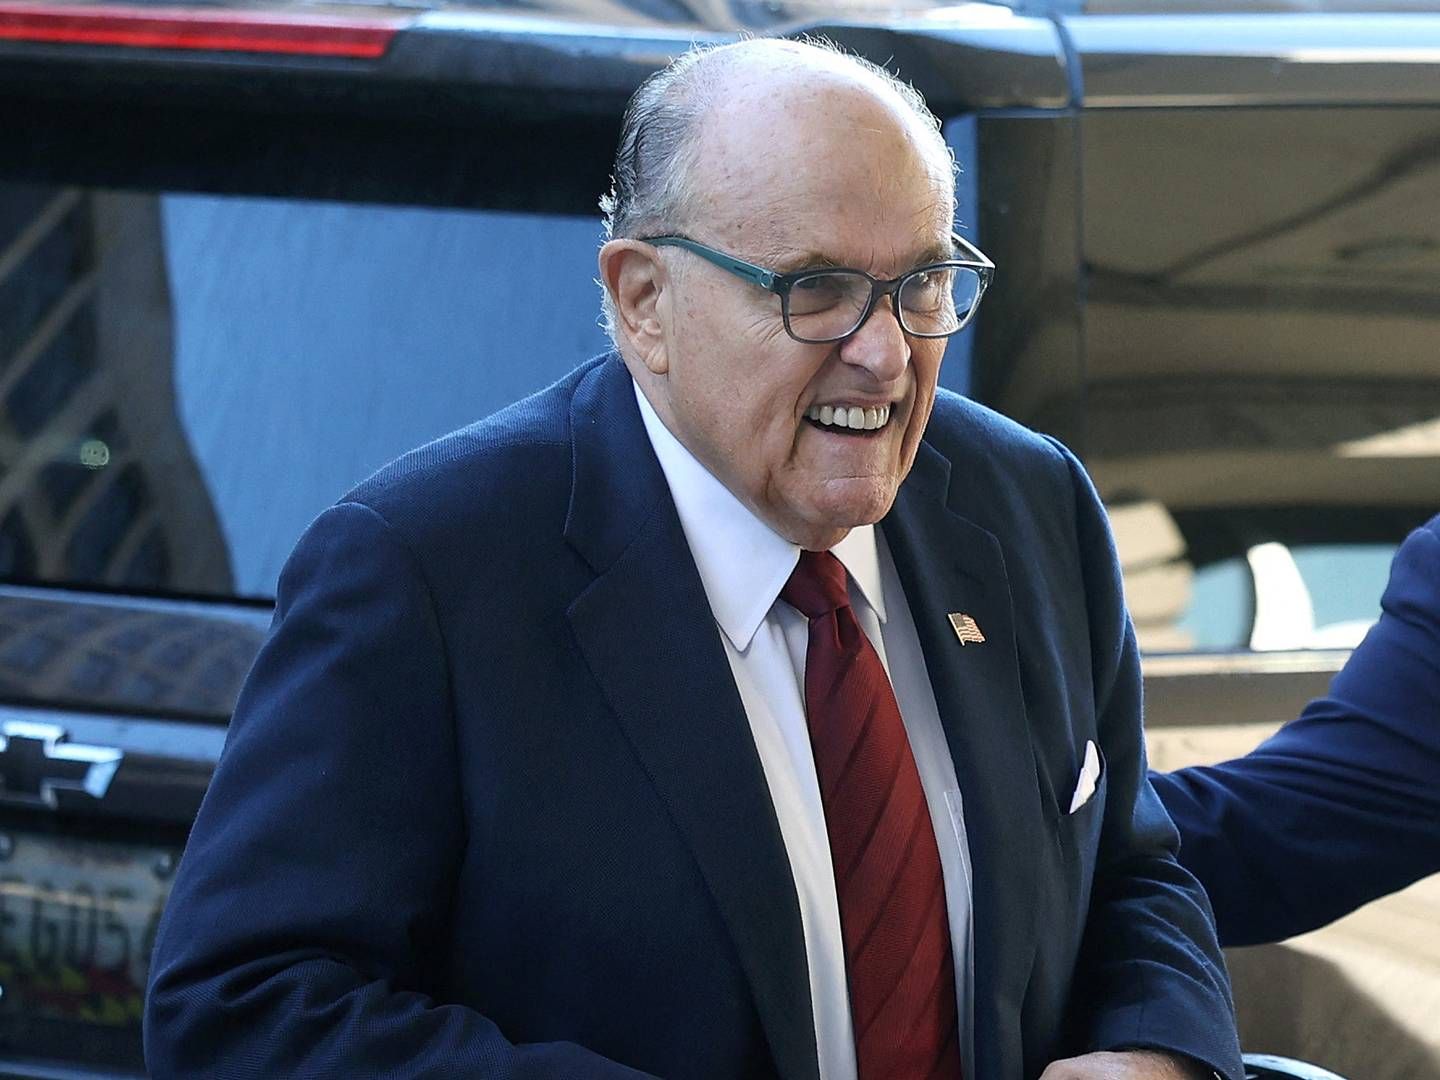 Nu 79-årige Giuliani spillede en vigtig rolle i Trump-kampagnens forsøg på at sprede budskaber om, at der skulle have været svindel i forbindelse med valget i 2020. | Foto: Kevin Dietsch